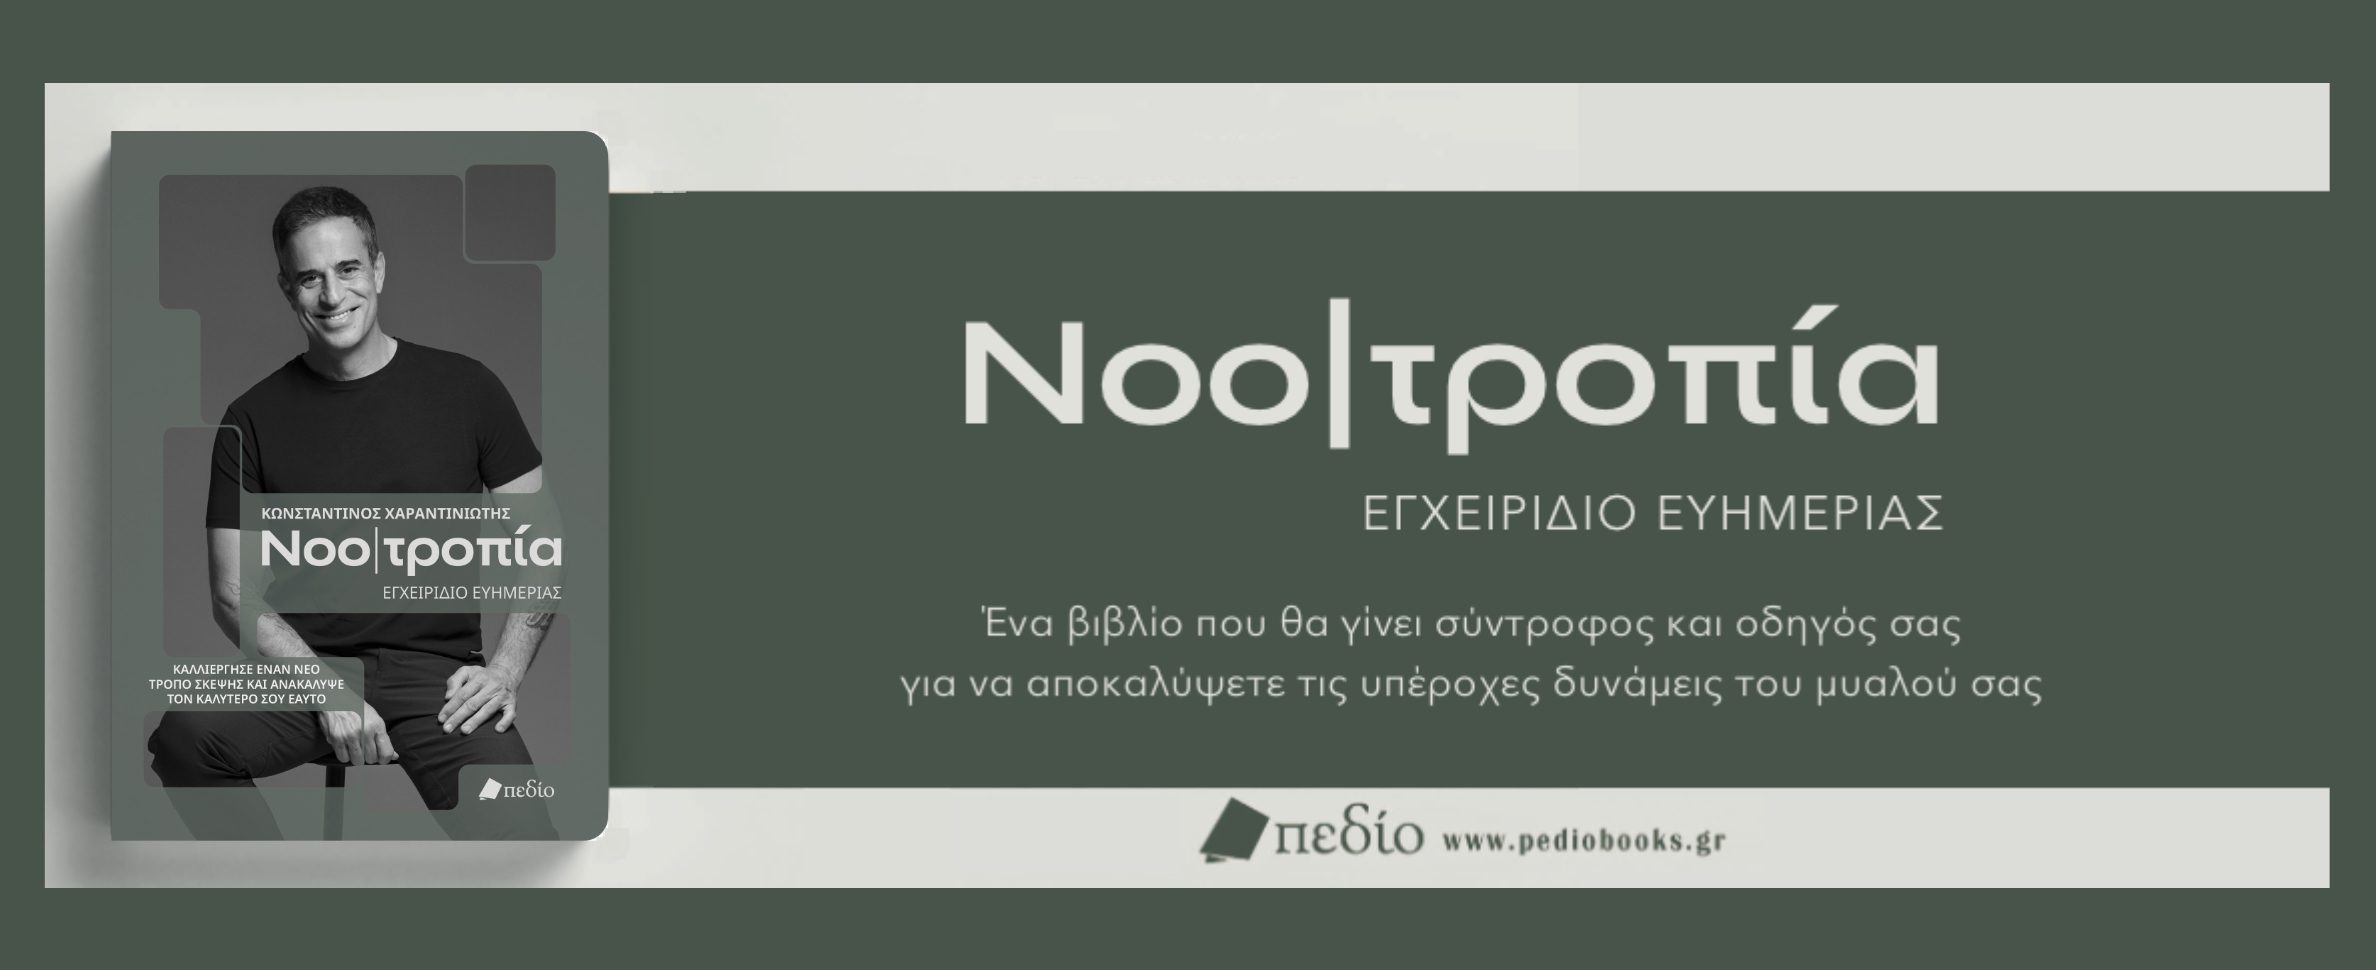 NOOTROPIA BOOK